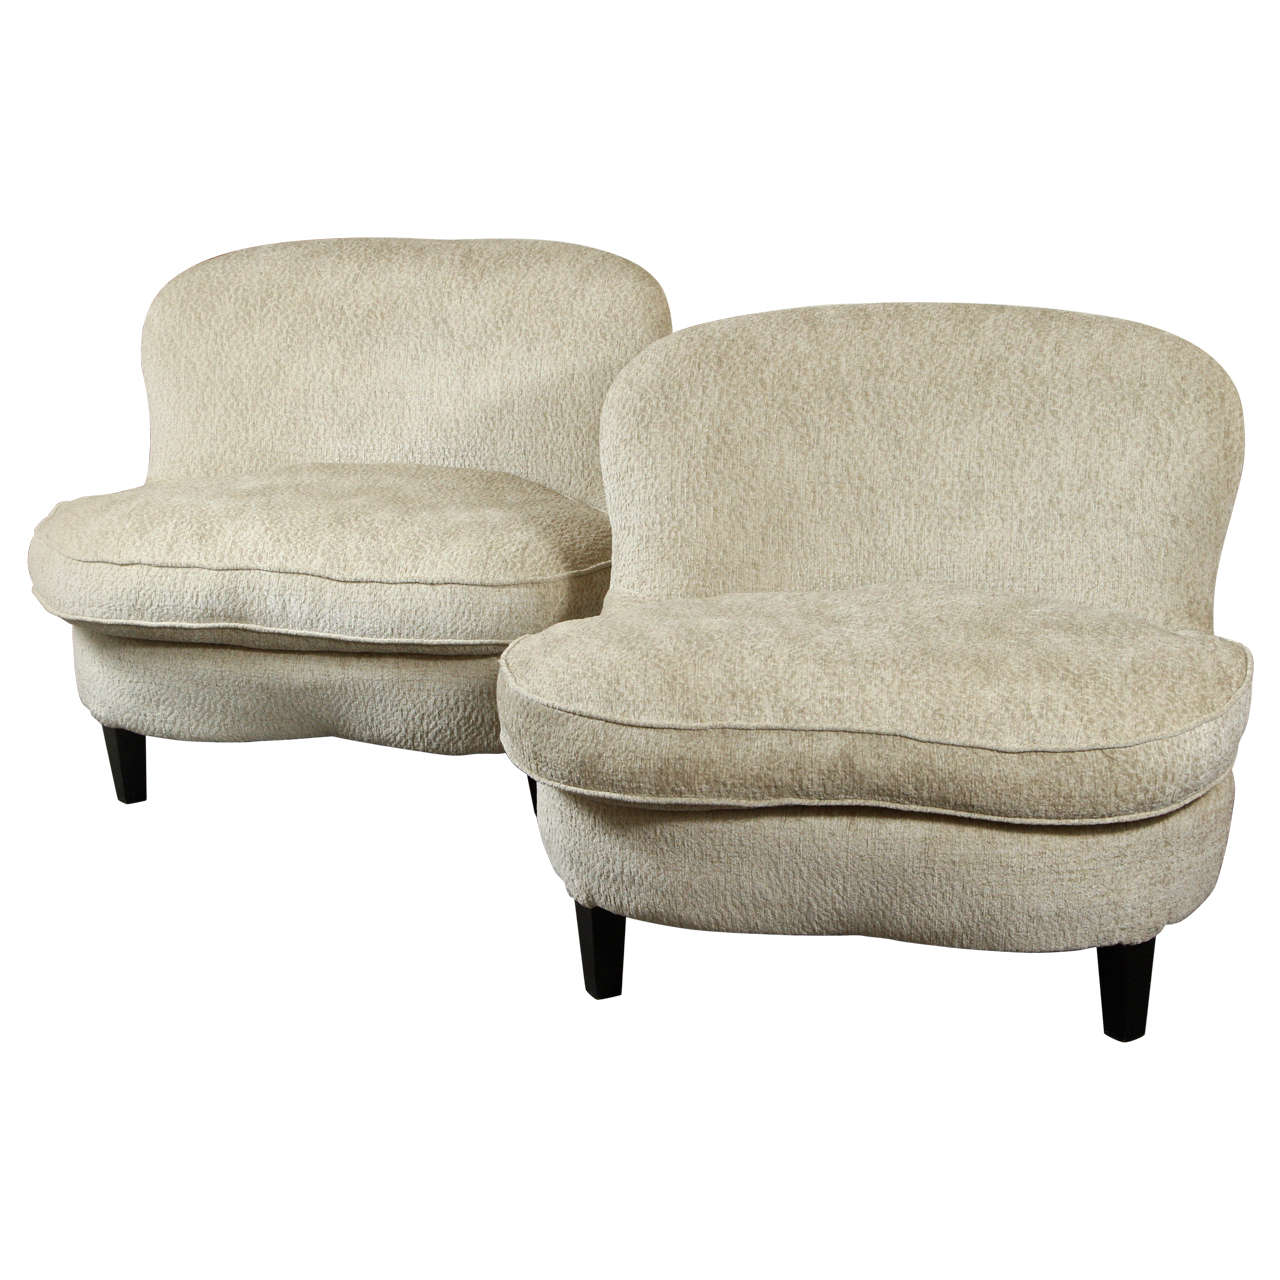 Glamorous Pair of Slipper Chairs